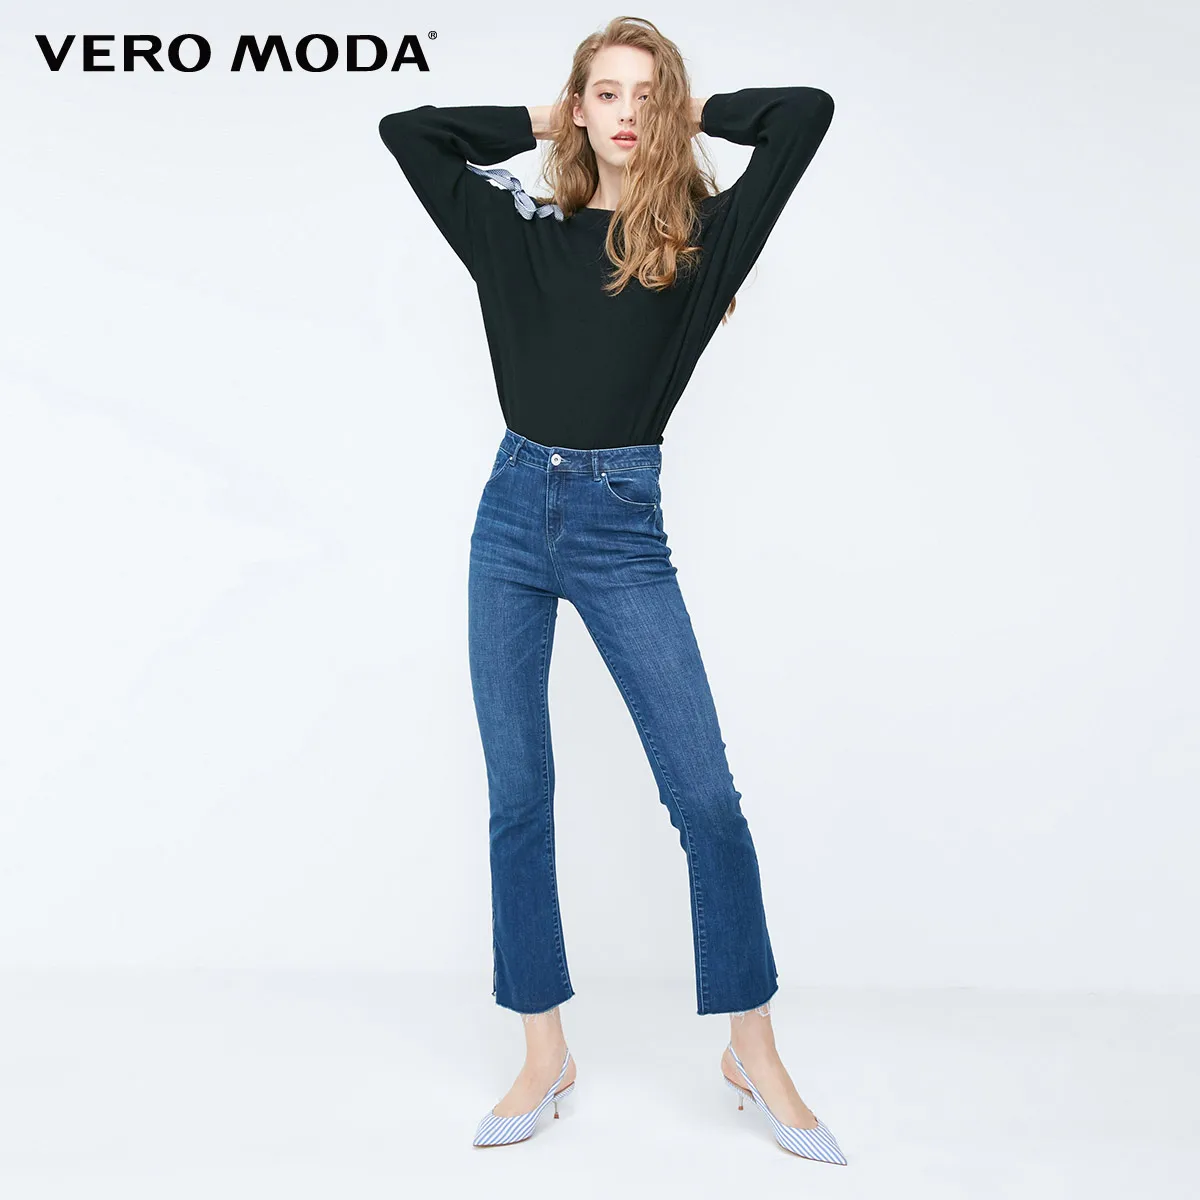 

Vero Moda 2019 New Arrivals Women's Raw-edge Cuffs Zipped High Waist Flared Jeans | 318432506